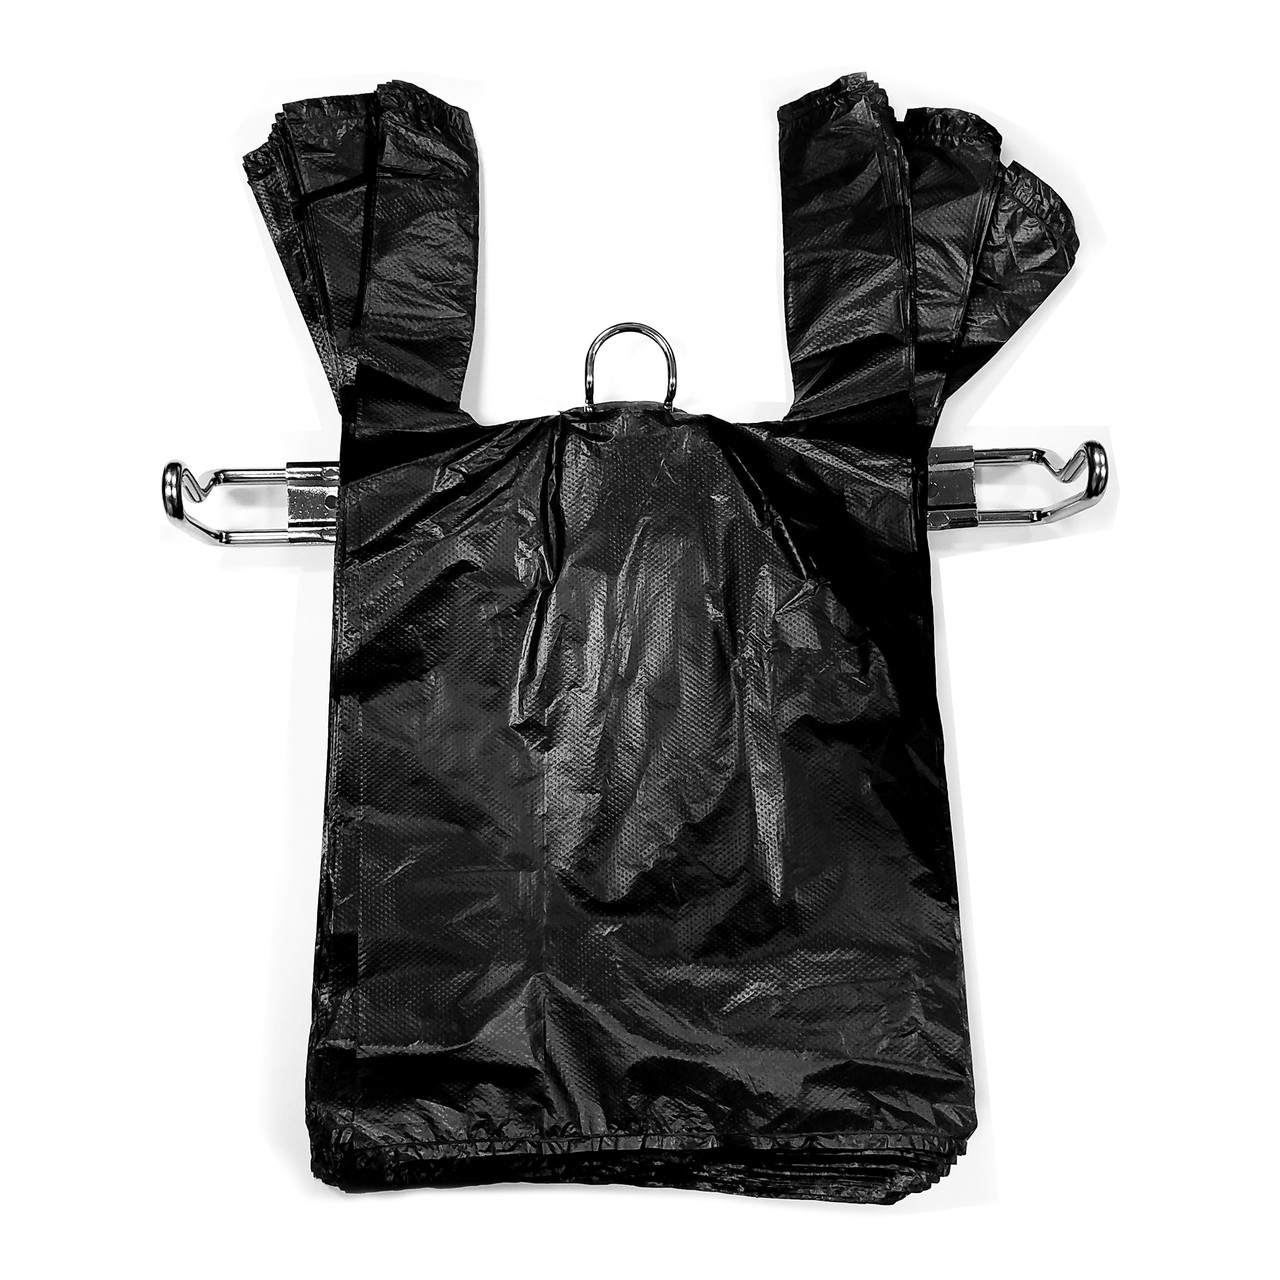 Dsotien plastic bag holder, large grocery bags holder, wall mount